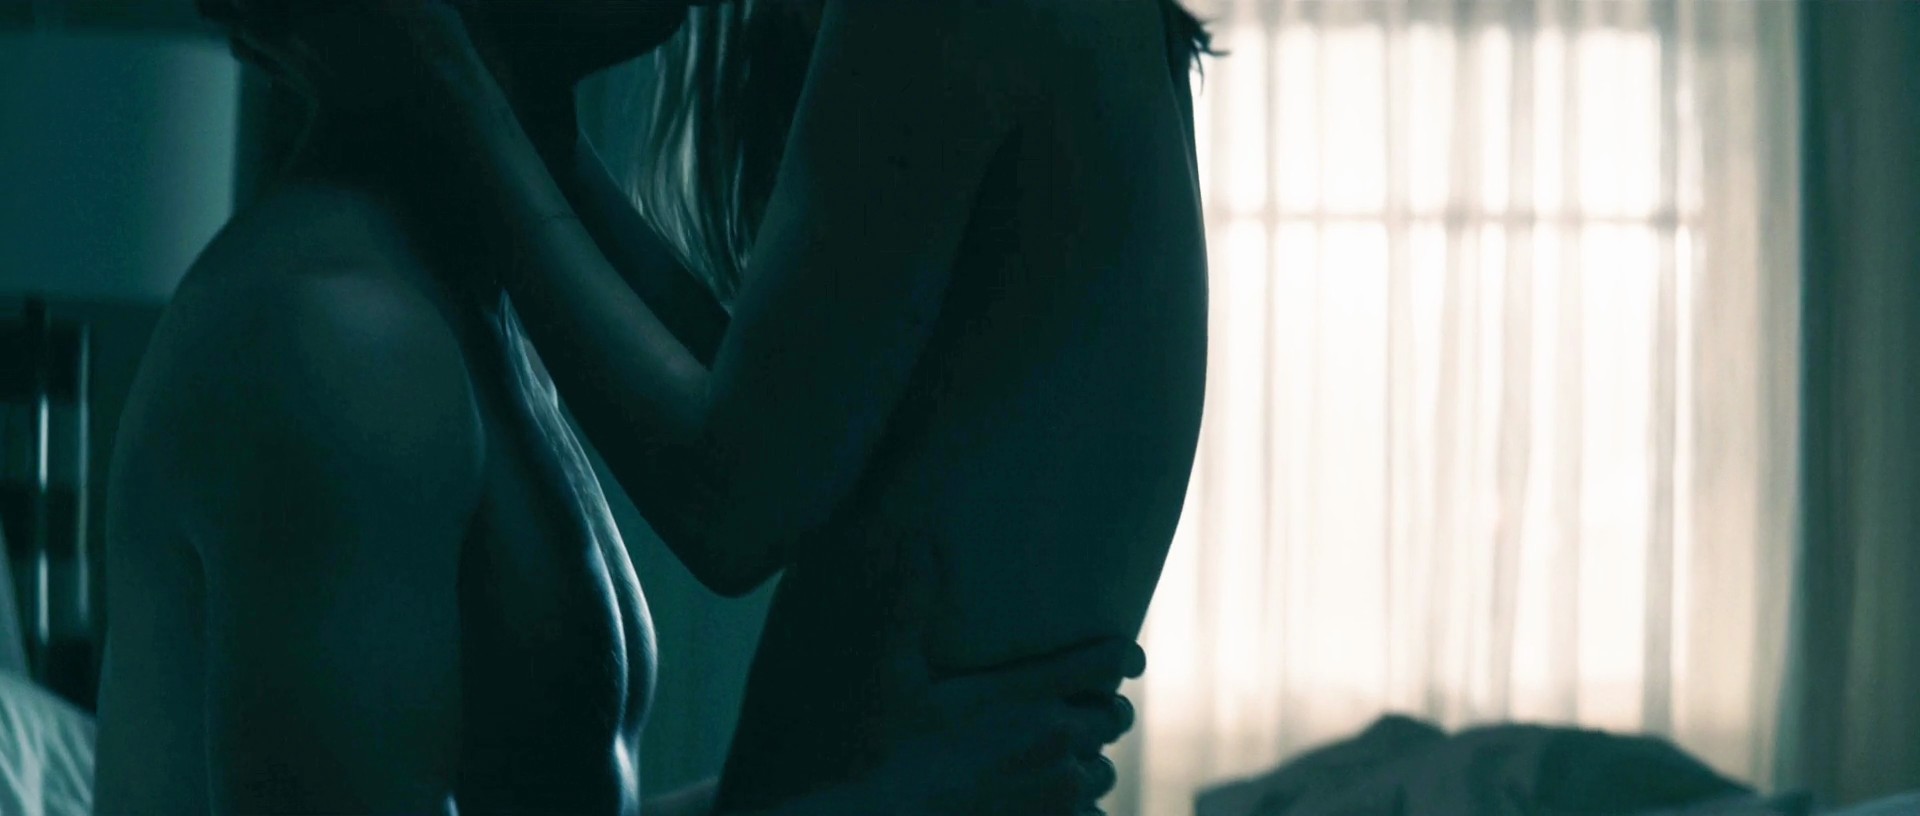 Erin Moriarty nude body in sex scene